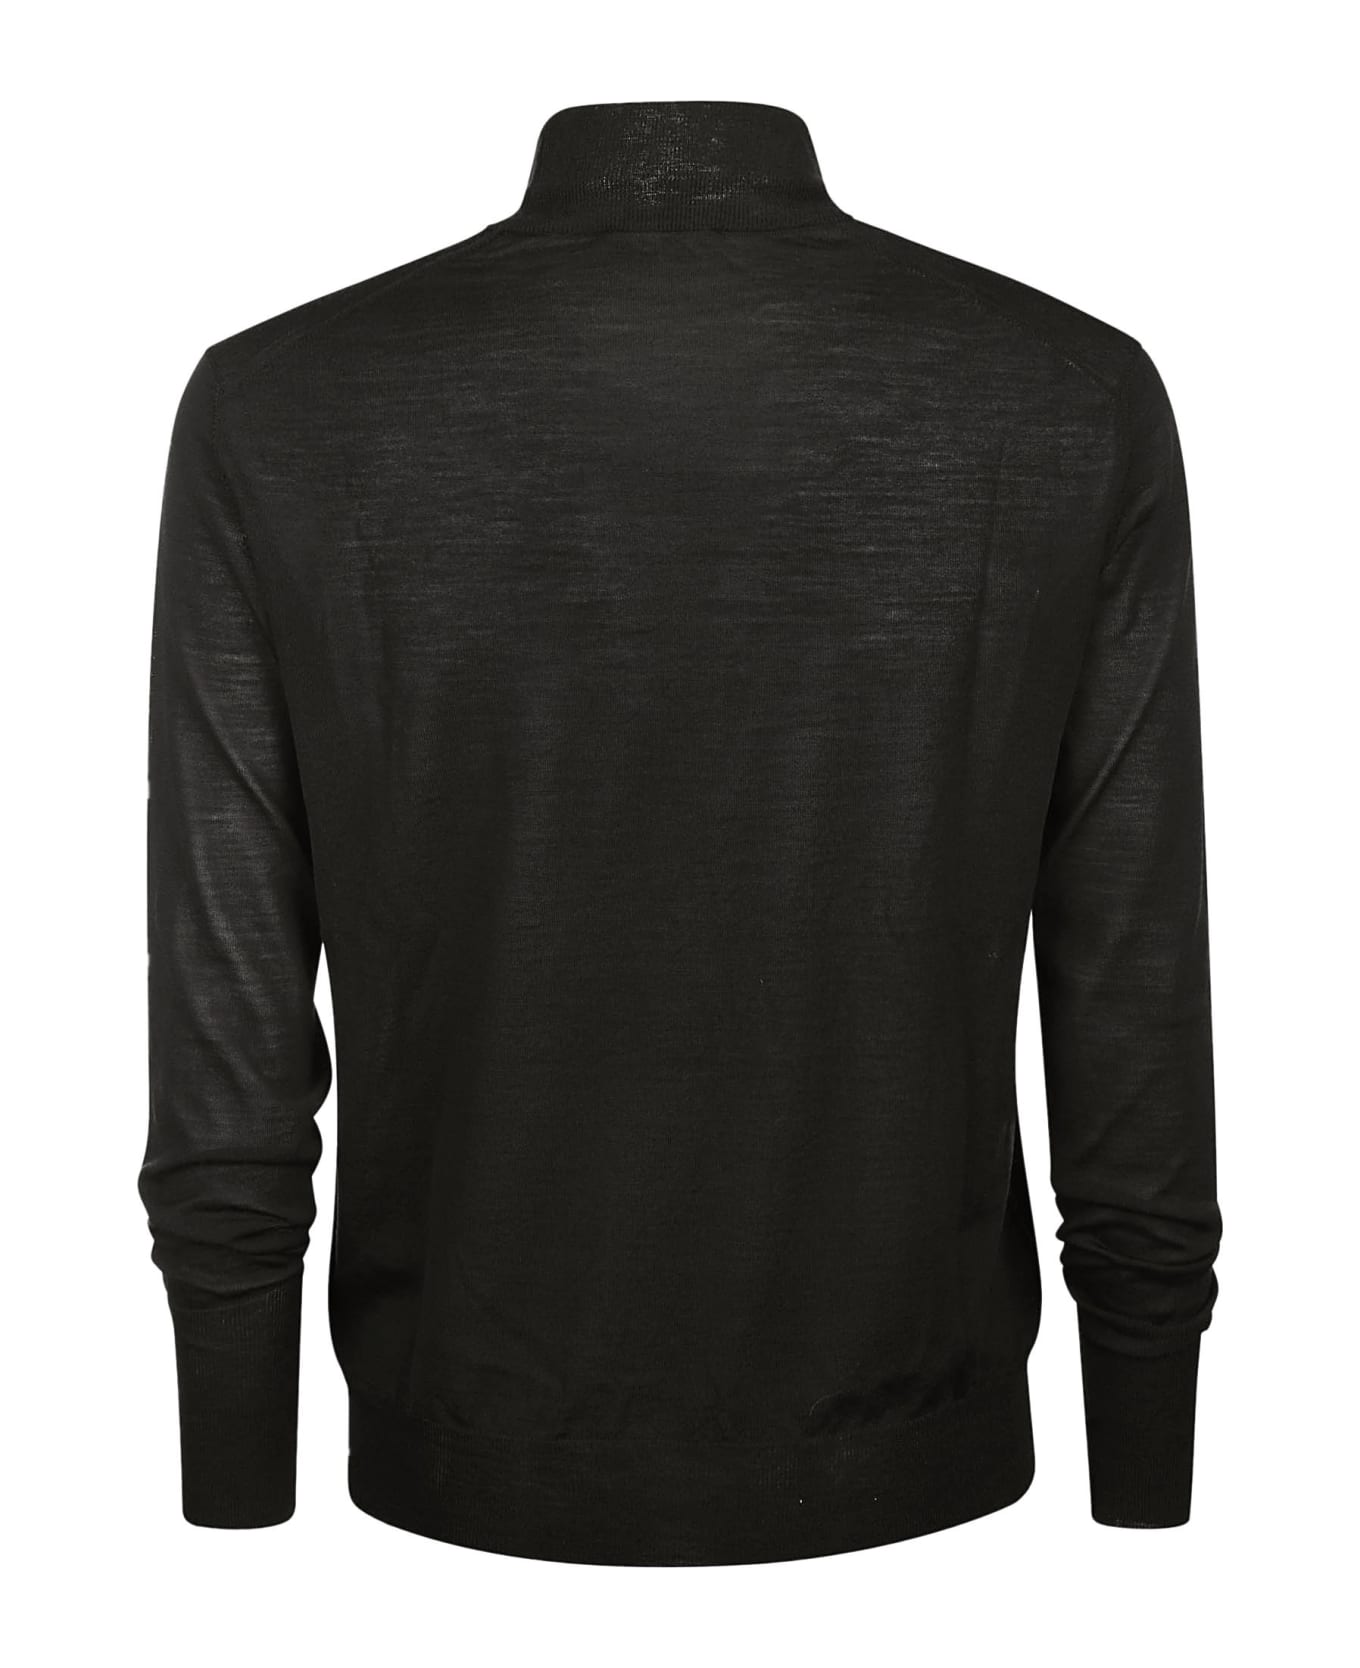 PT01 Turtle Sweater - Black ニットウェア